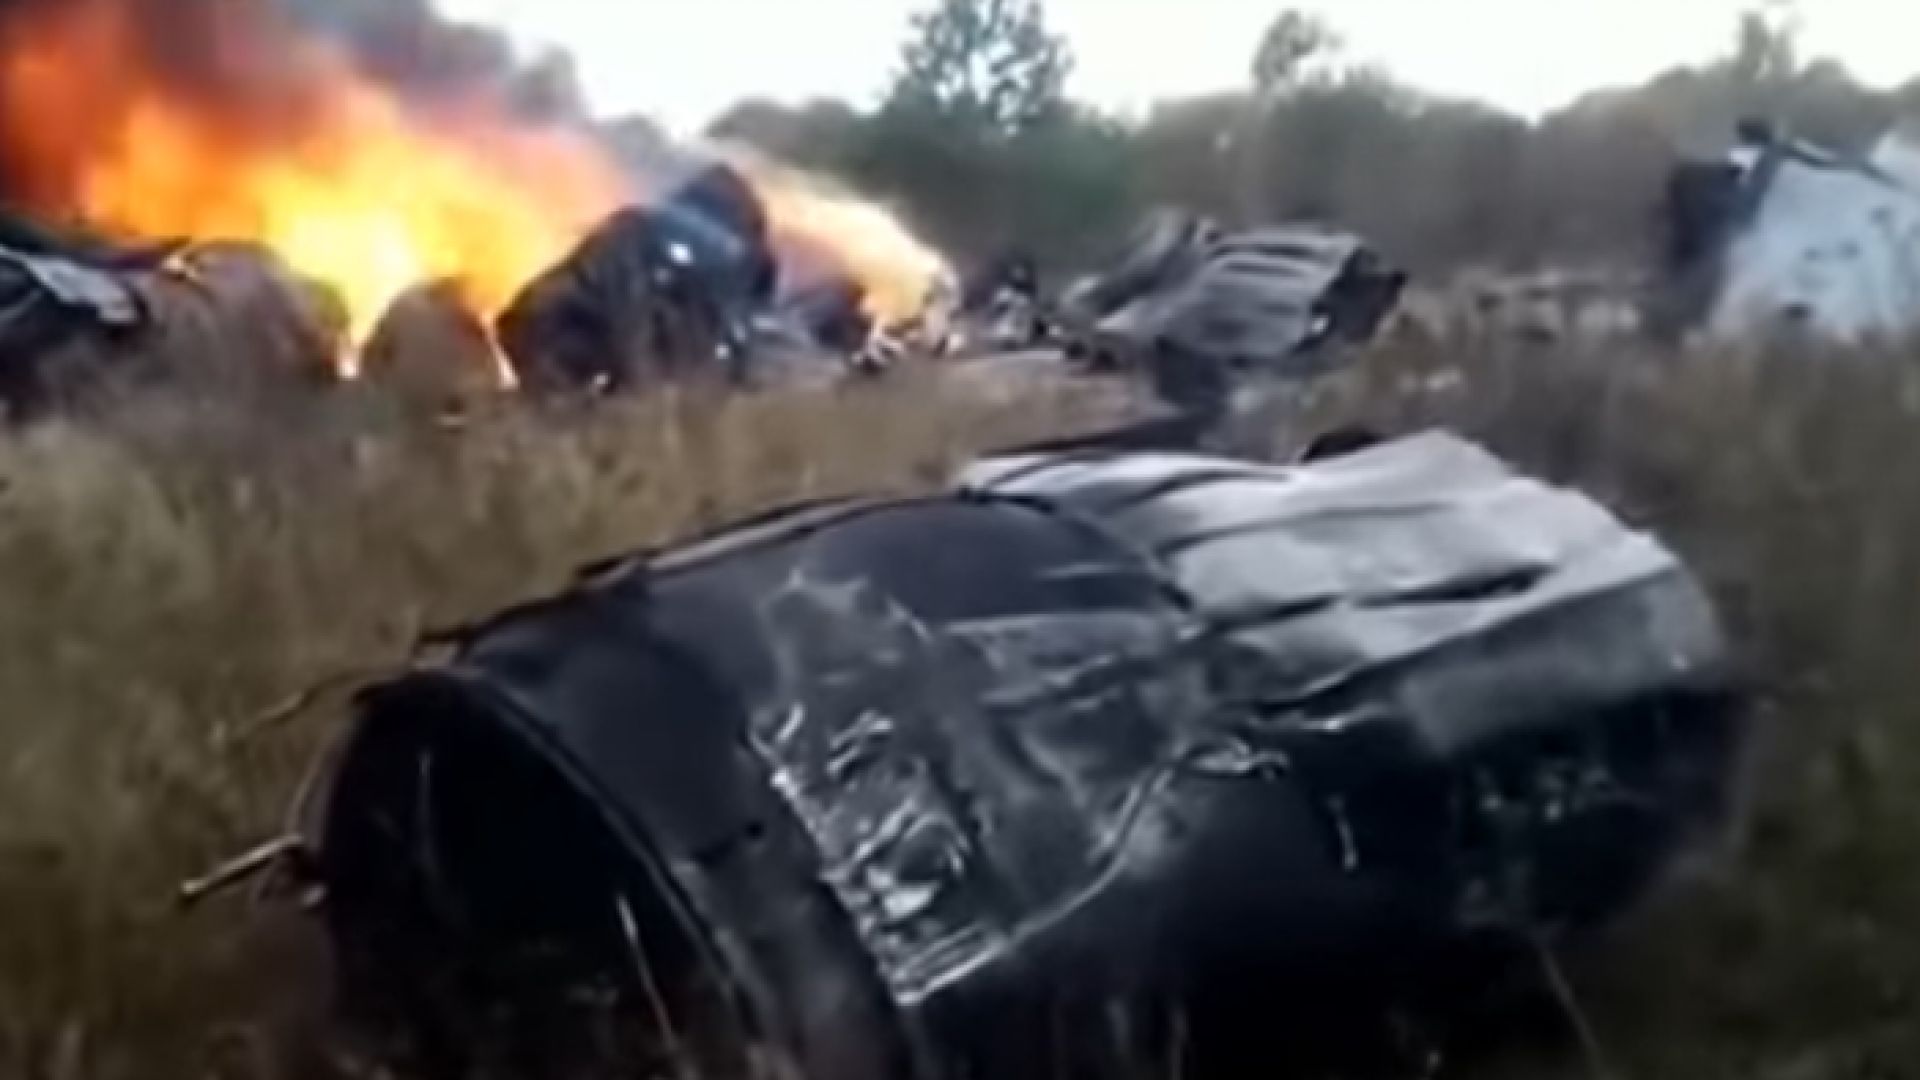 Руски изтребител МиГ 29 се е разбил в покрайнините на руската